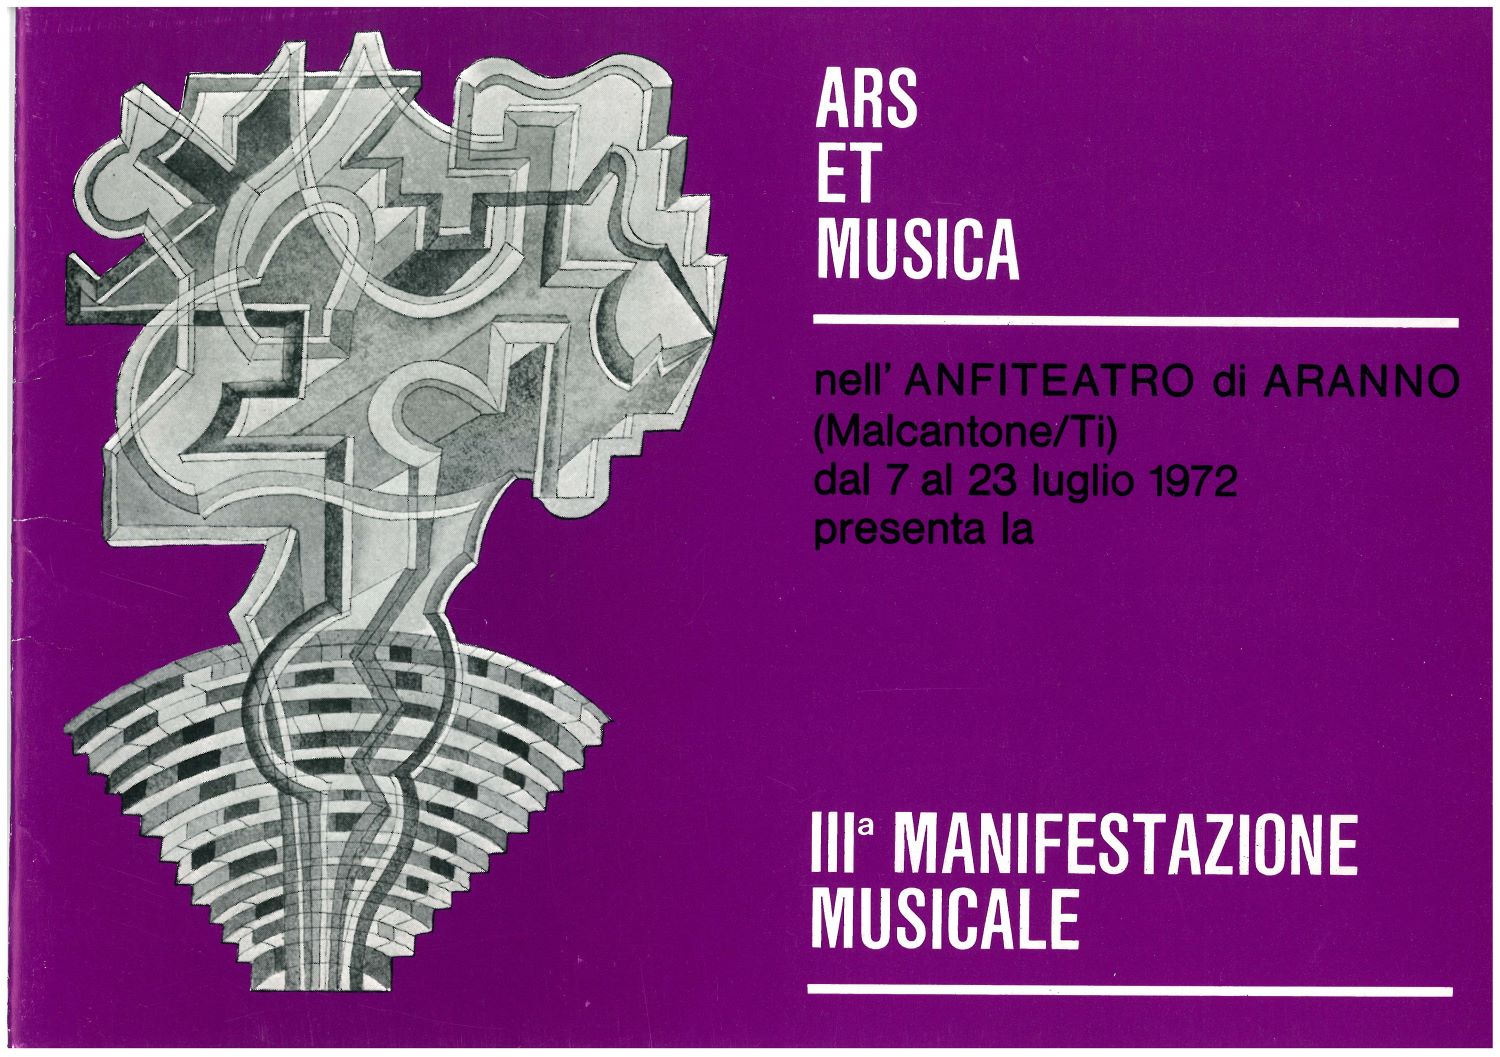 Katalog festivalu Art Et Musica, 7.-23.7.1972 (foto archiv IPŠ)